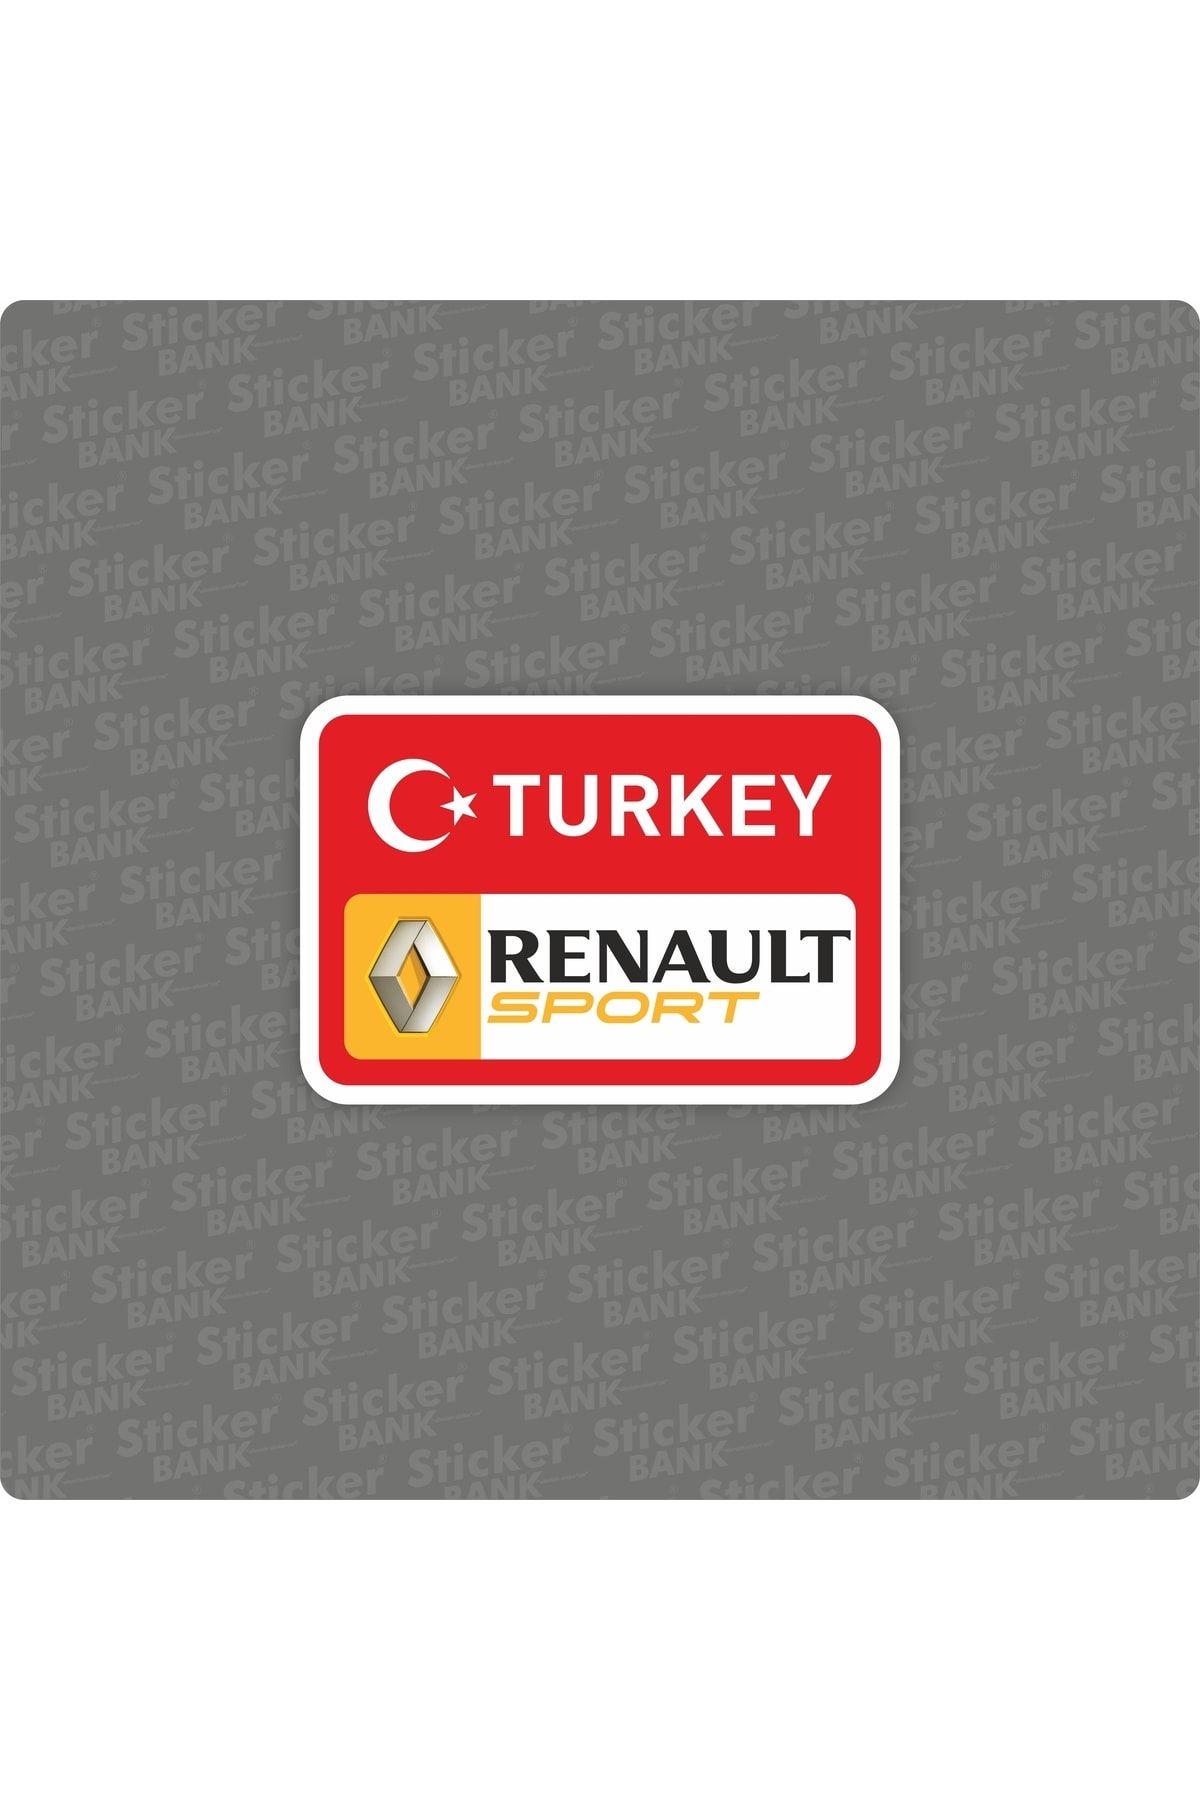 Sticker Bank Araba Sticker Renault Turkey Sticker